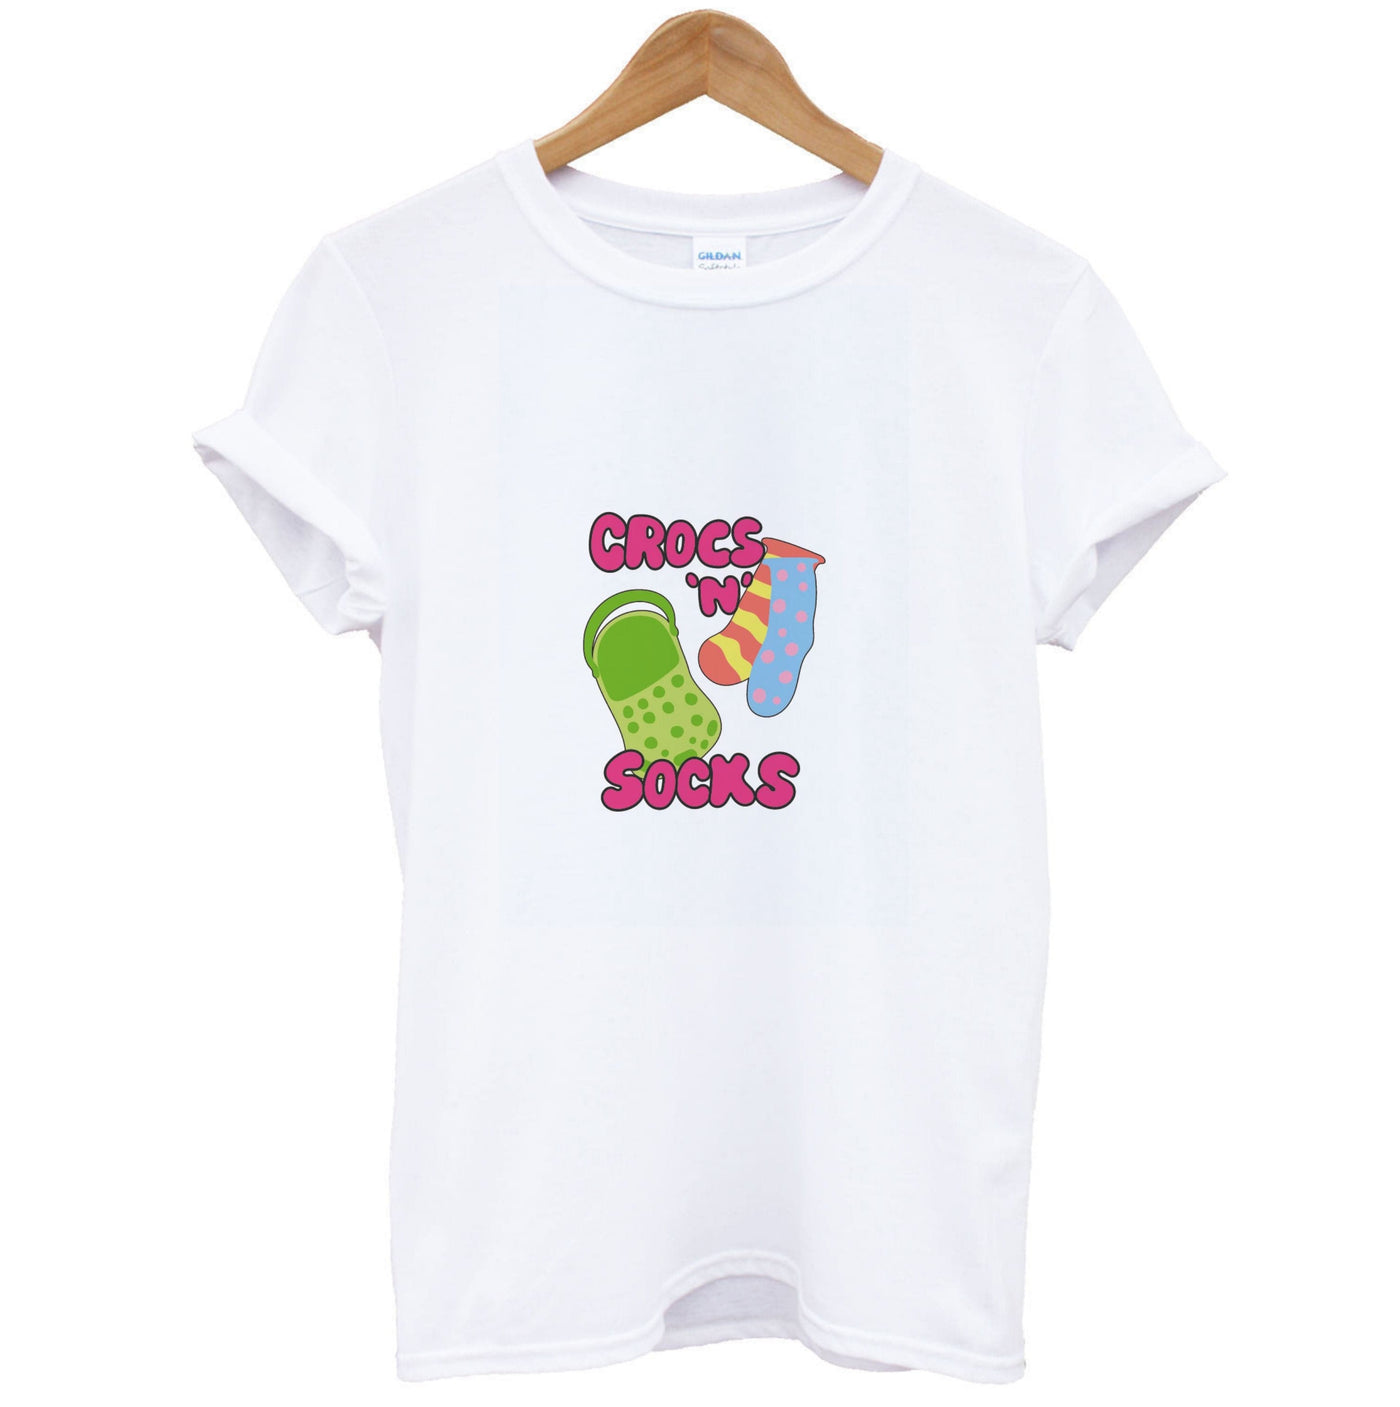 Crocs And Socks - Crocs T-Shirt